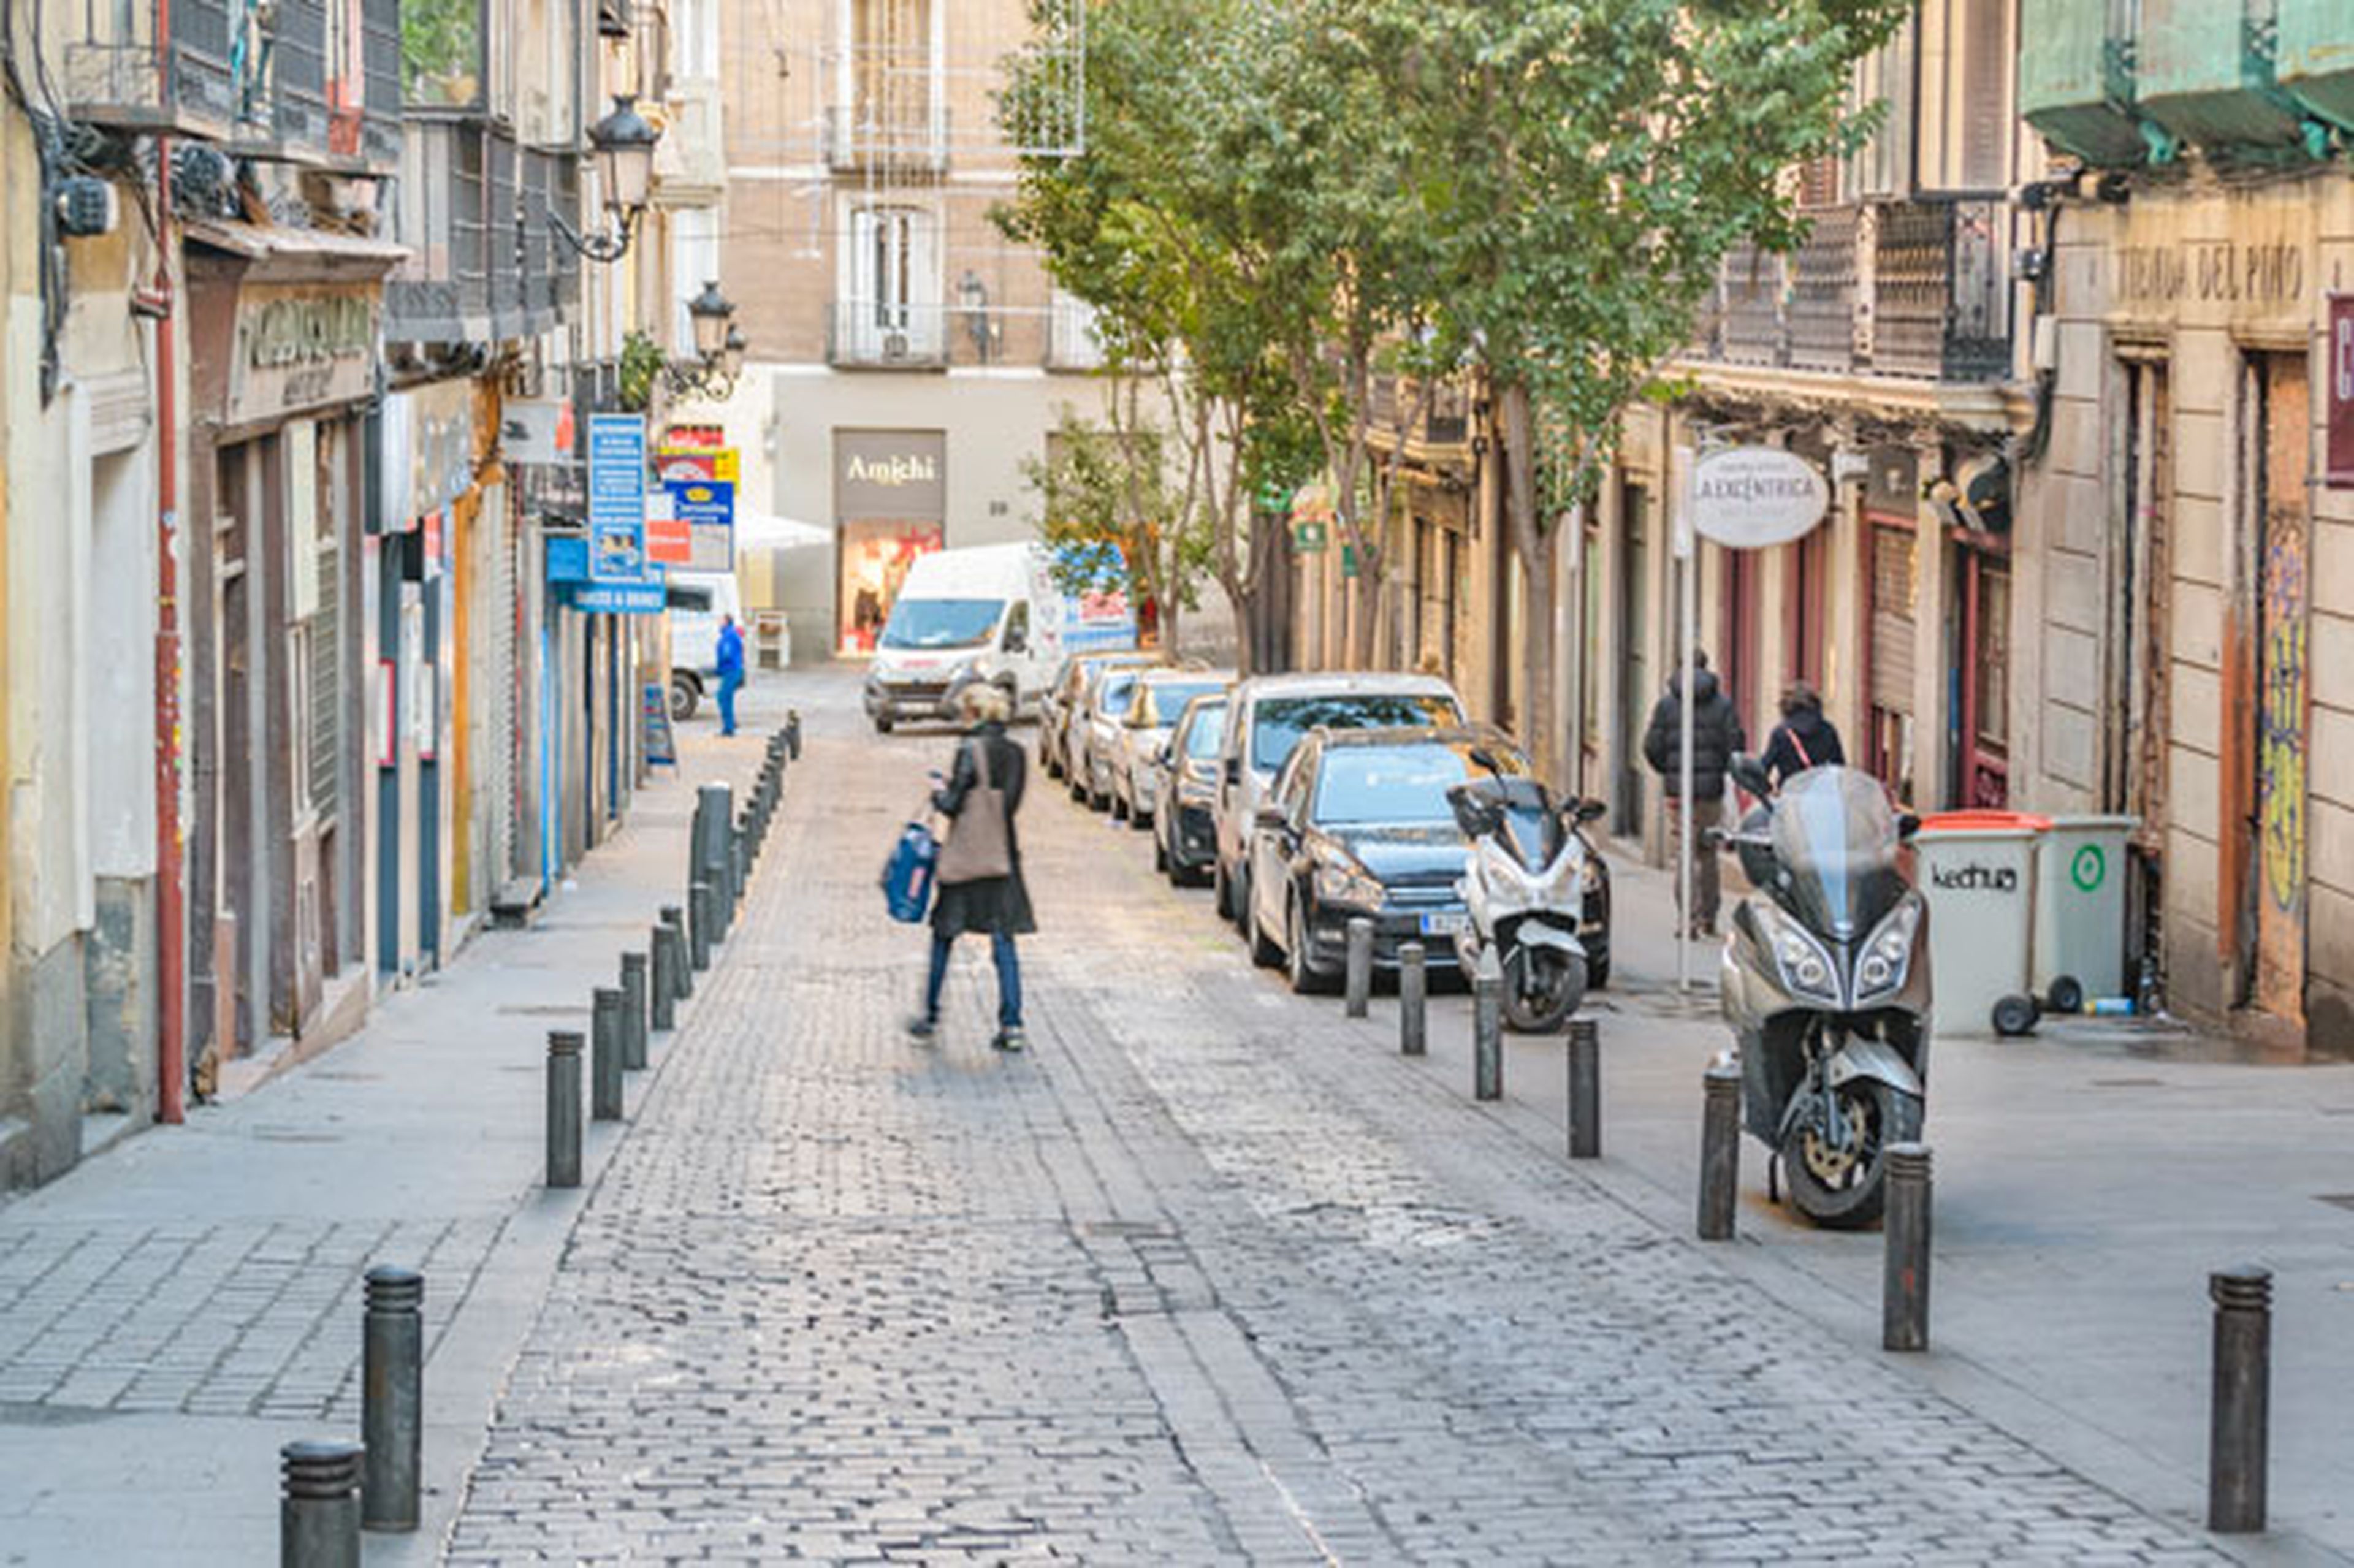 Las motos forman parte del paisaje en las calles madrileñas, ¿qué opinan de ello los peatones?